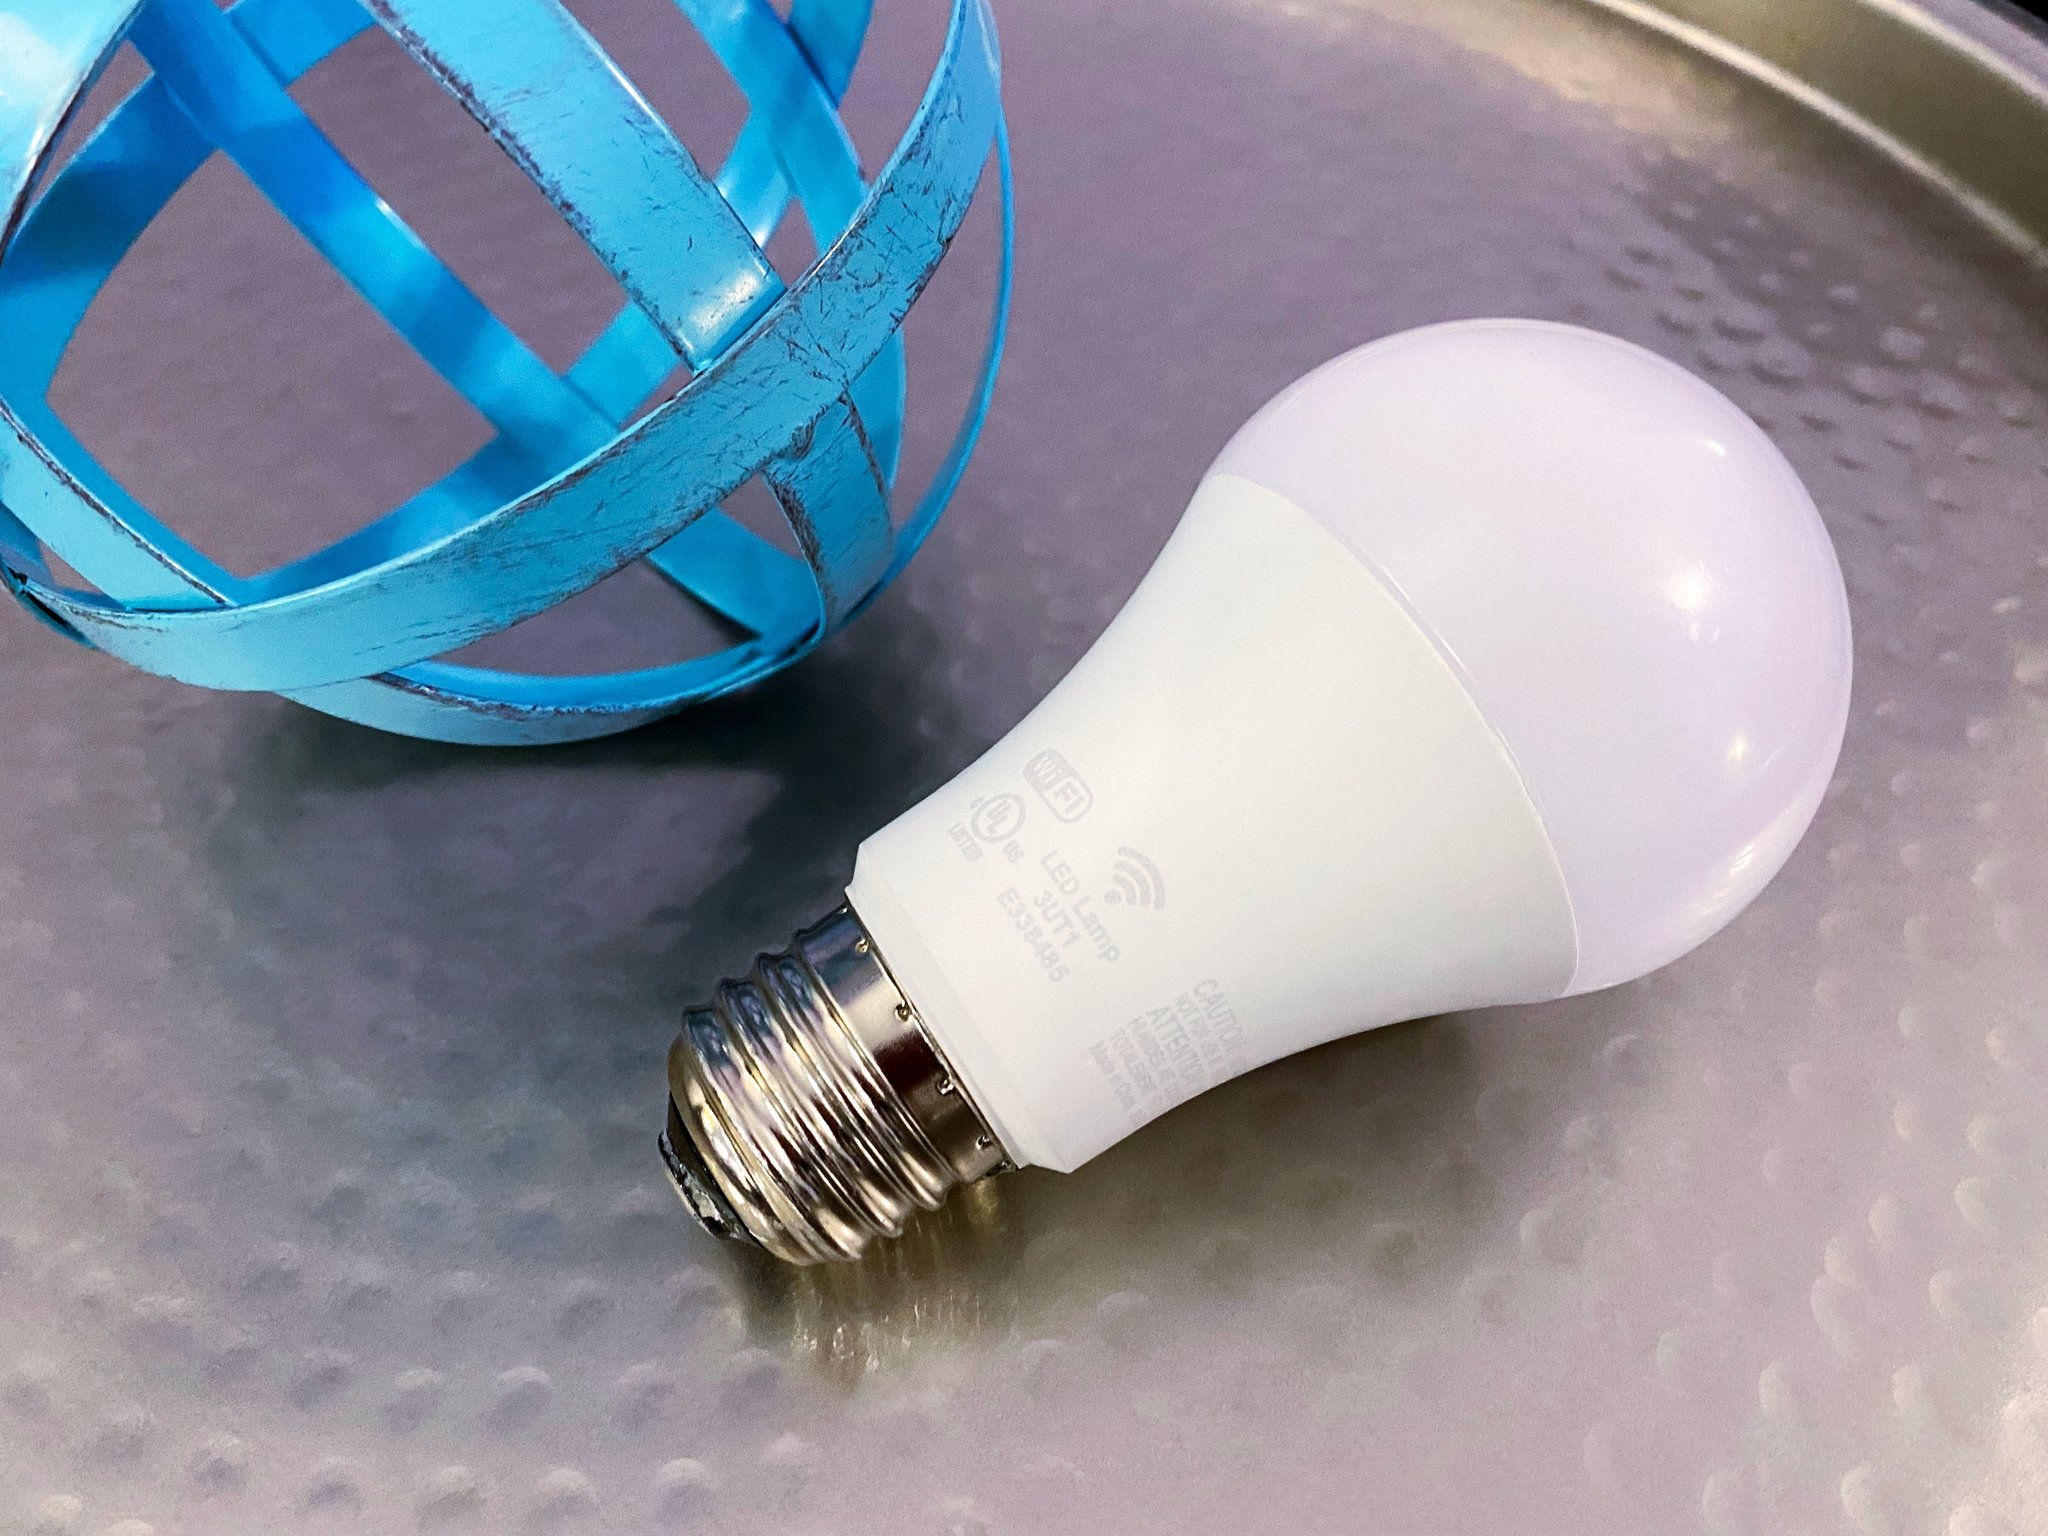 Nanoleaf Essentials A19 E27 smart bulb review: affordable smart lighting